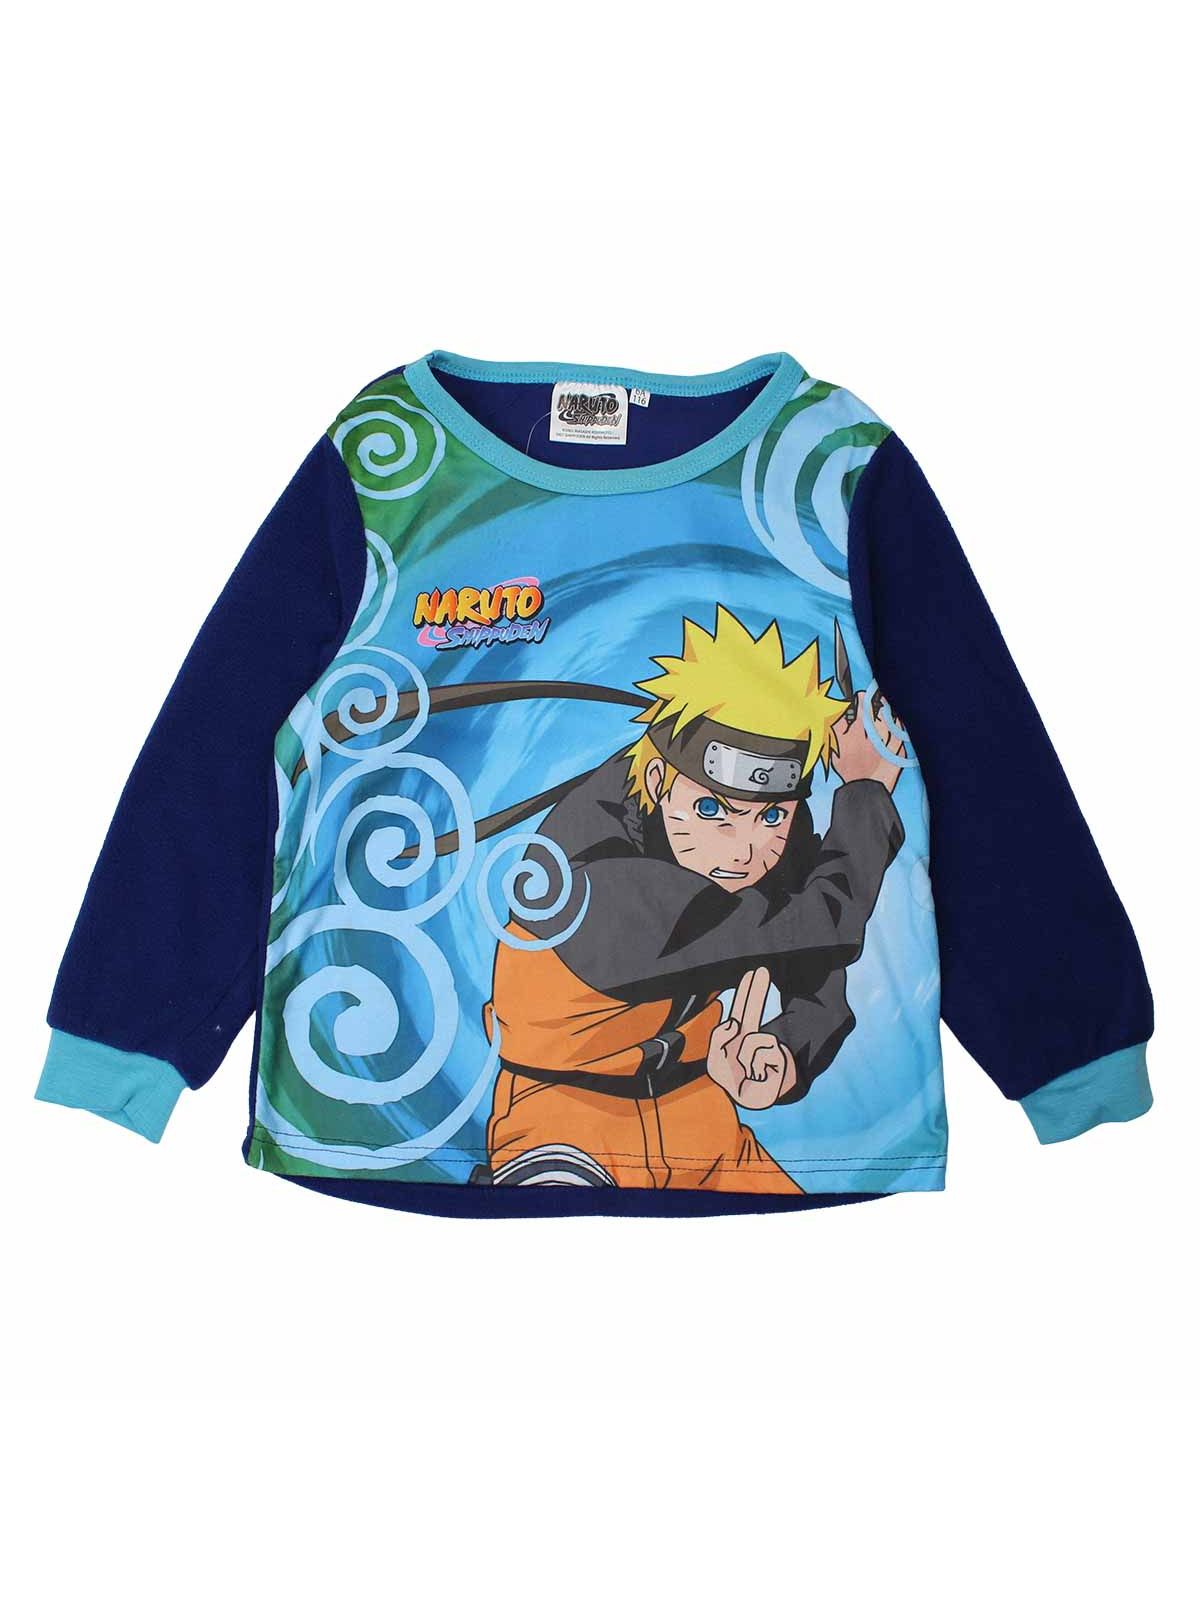 Pyjama polaire Naruto